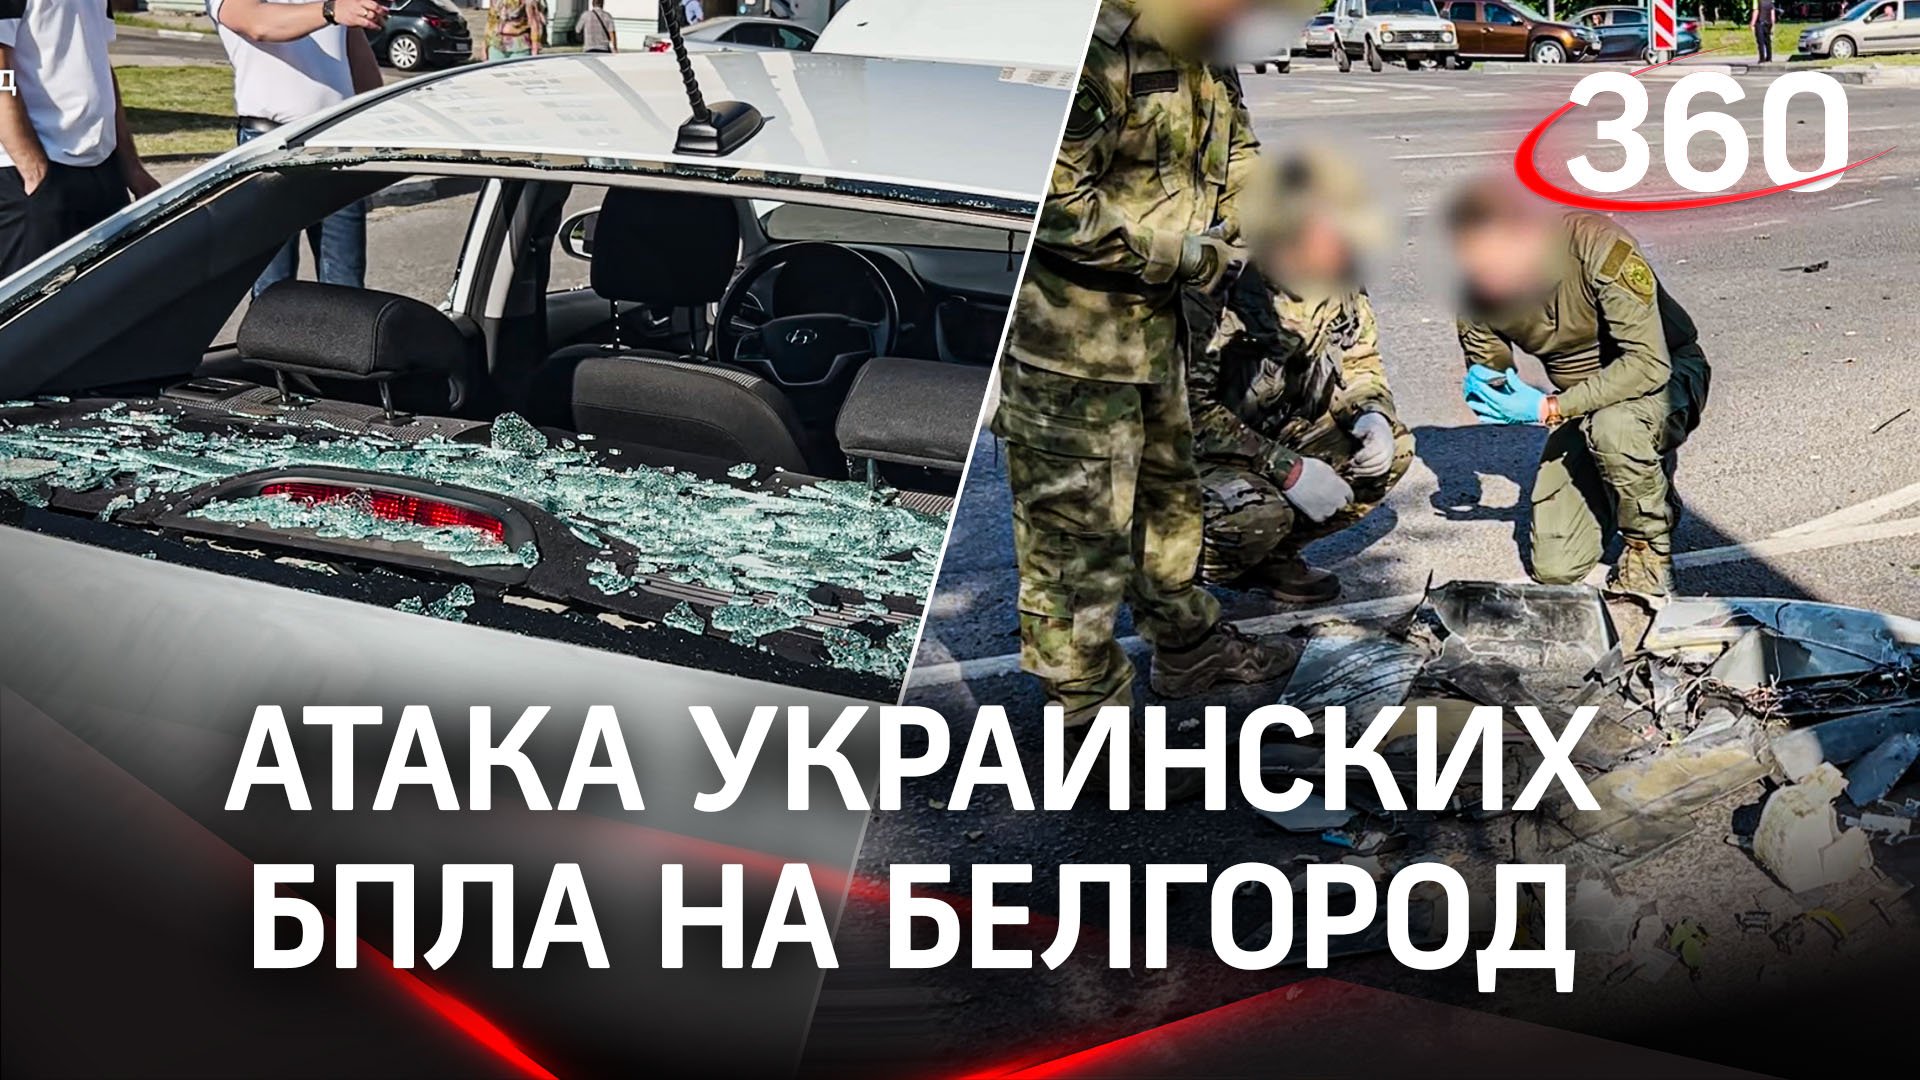 Атака украинского дрона на Белгород. Кадры с места событий